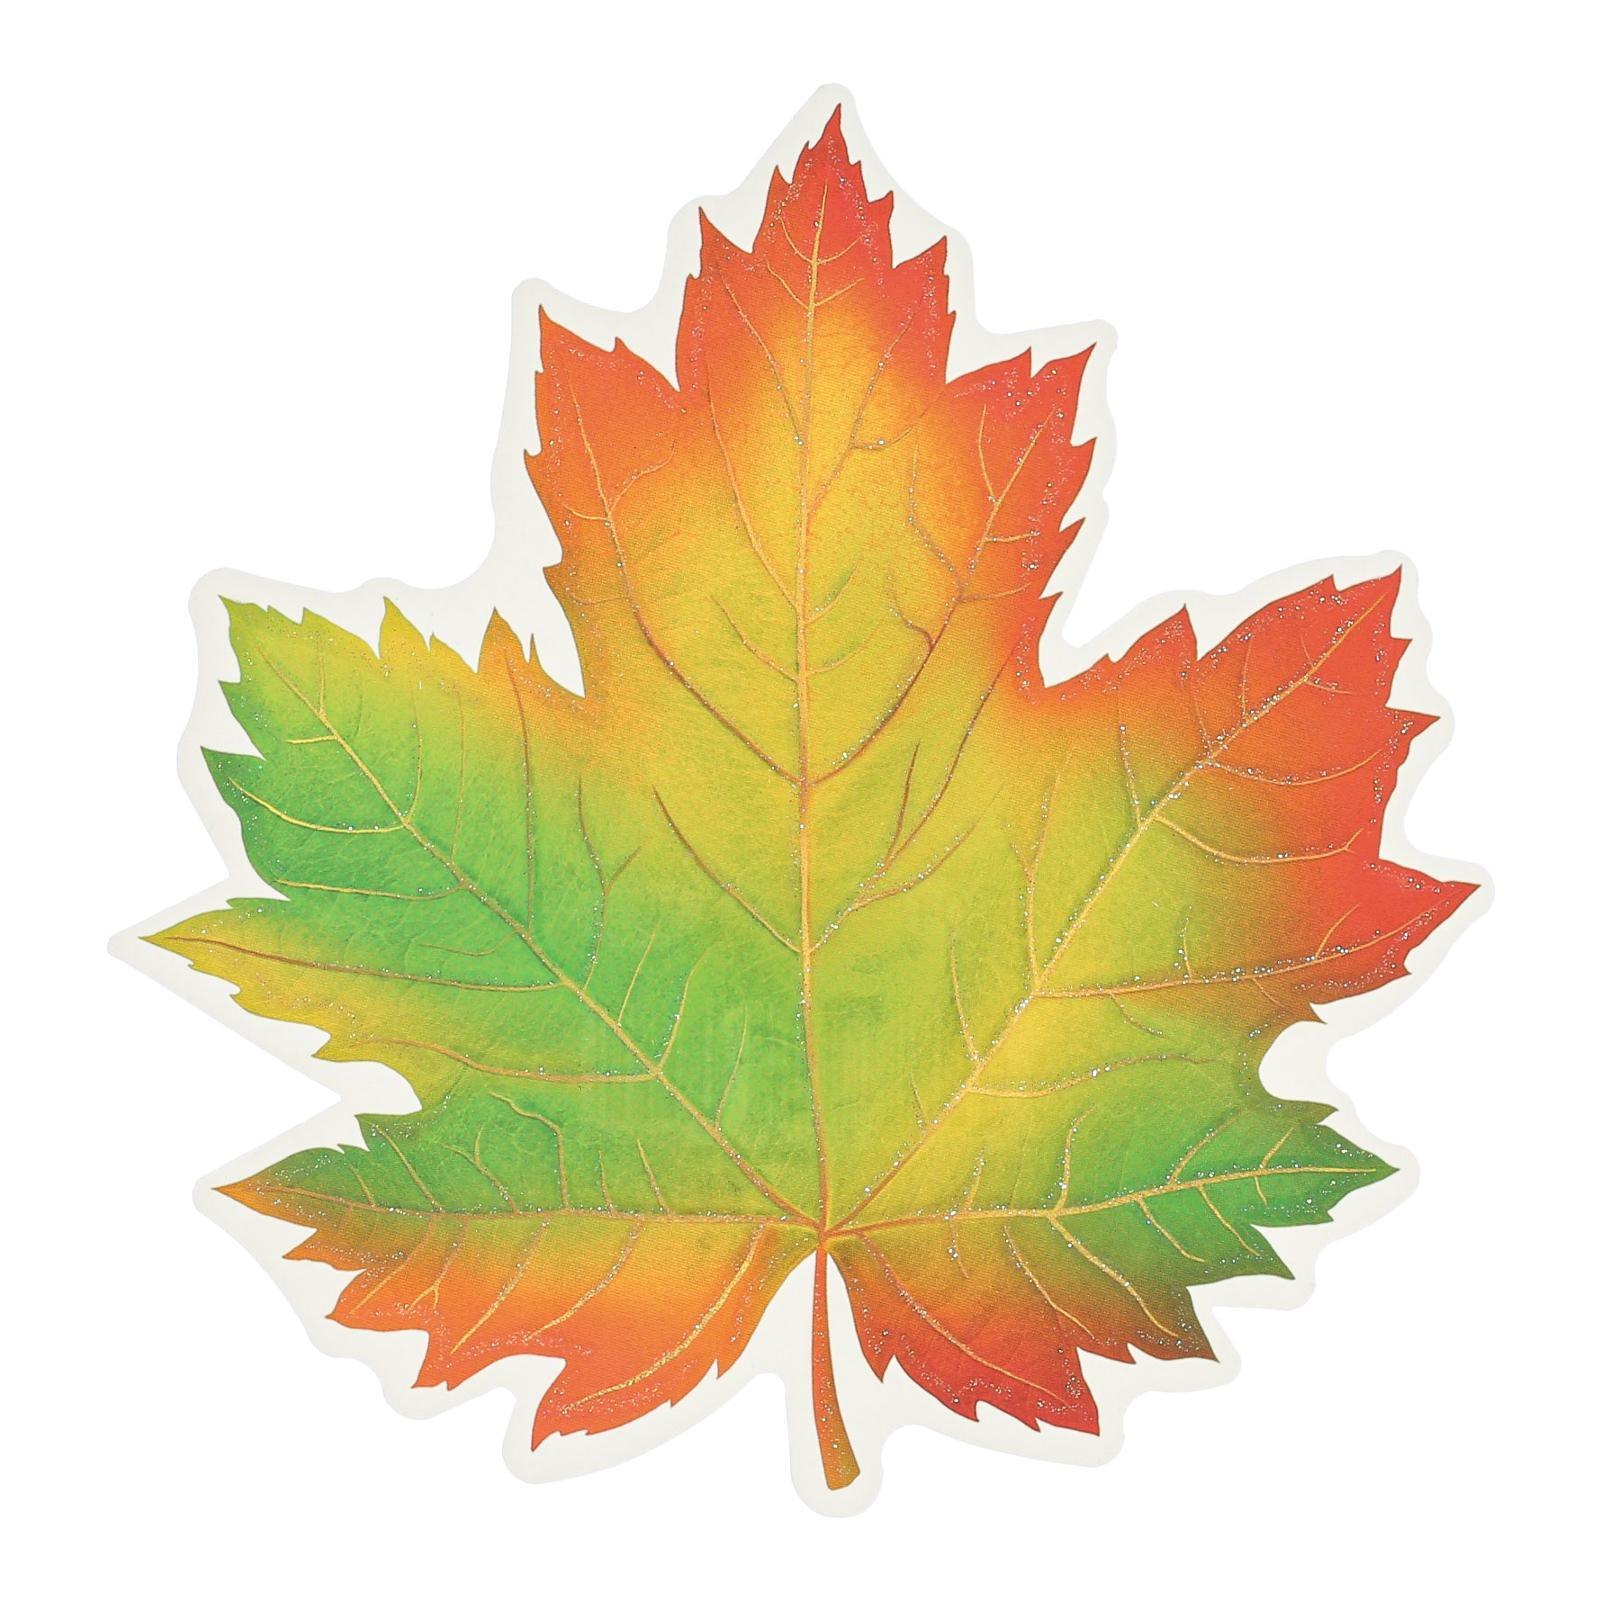 Листья клена желтые и красные. Кленовый лист желтый. Осенние листья. Желтые листочки. Кленовый лист оранжевый.